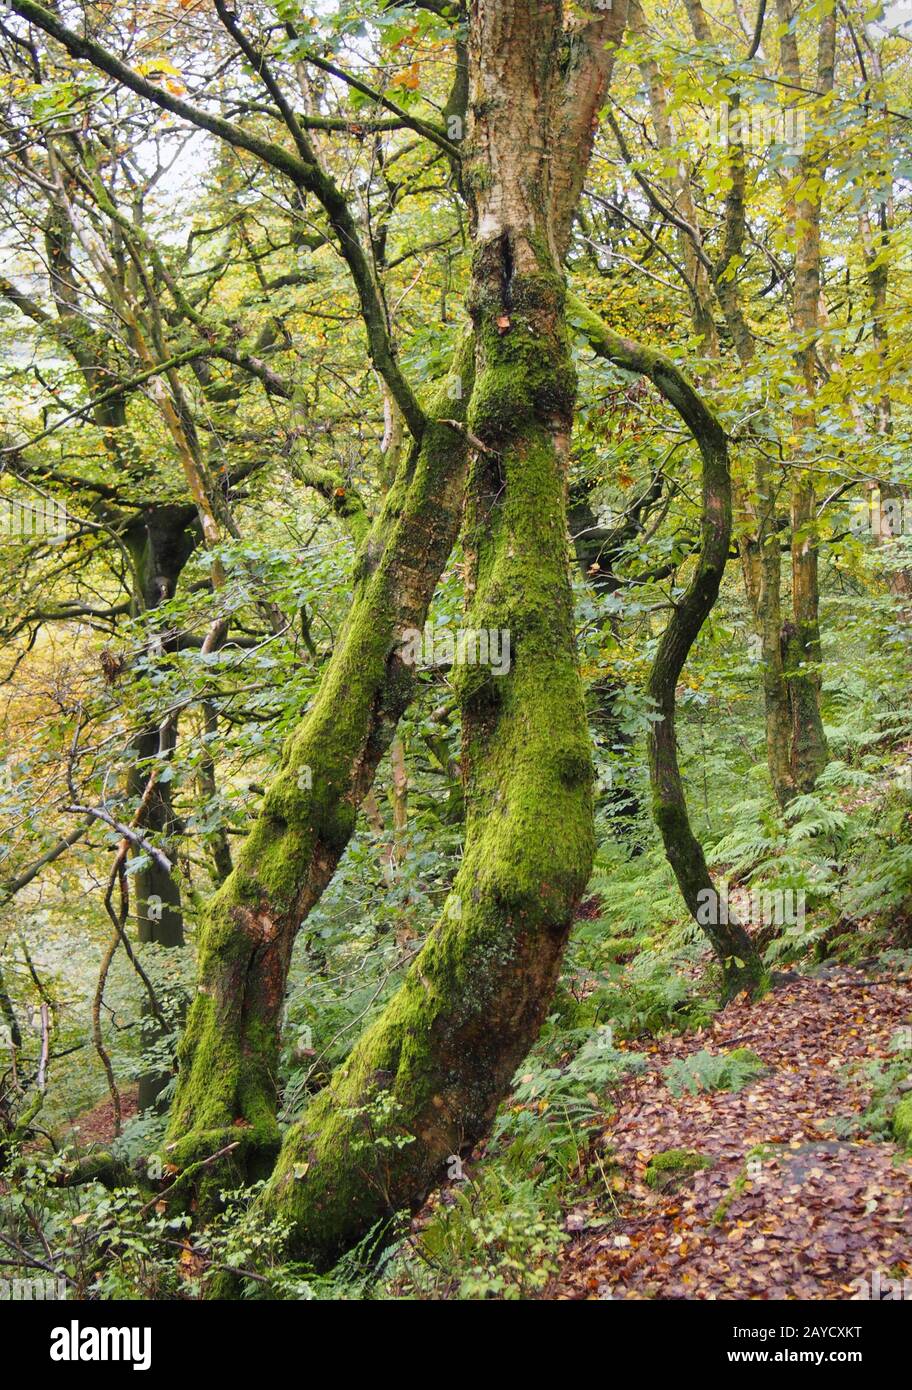 un sentier forestier qui disparaît en mousse dense couvrait des arbres tordus avec des feuilles d'automne qui se transforment en jaune Banque D'Images